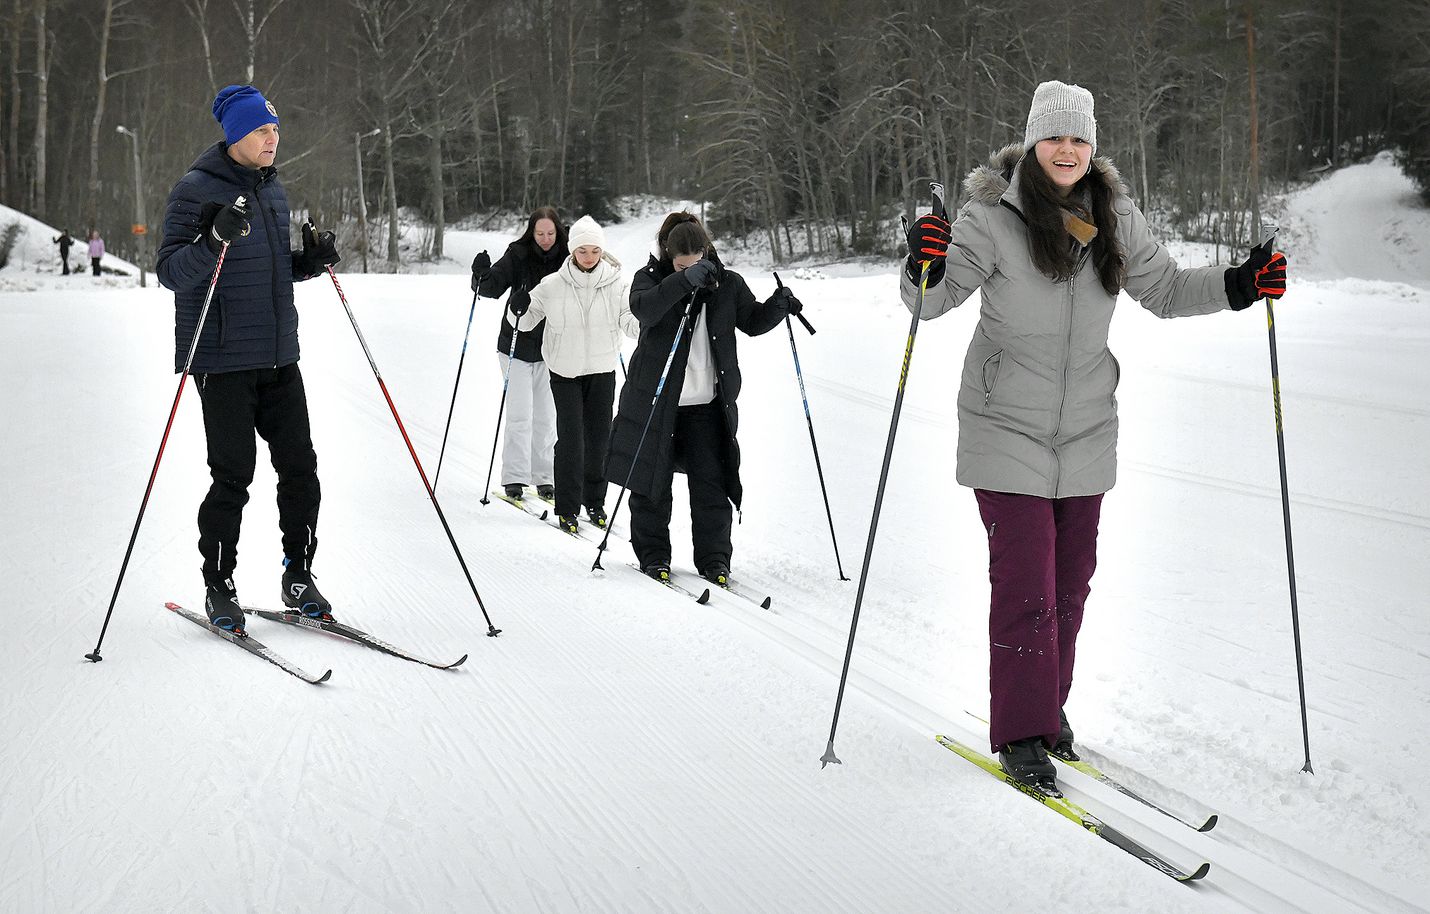 Kreikkalainen Francesca Manologlou osallistui tiistaina Lähdepellolla hiihtokouluun. Manologlou tutustuu tällä viikolla Raumaan Erasmus-vaihdon kautta. Hän on viihtynyt Suomessa erittäin hyvin ja nauttii muun muassa lumesta, jota ei juuri Kreikassa näe. 